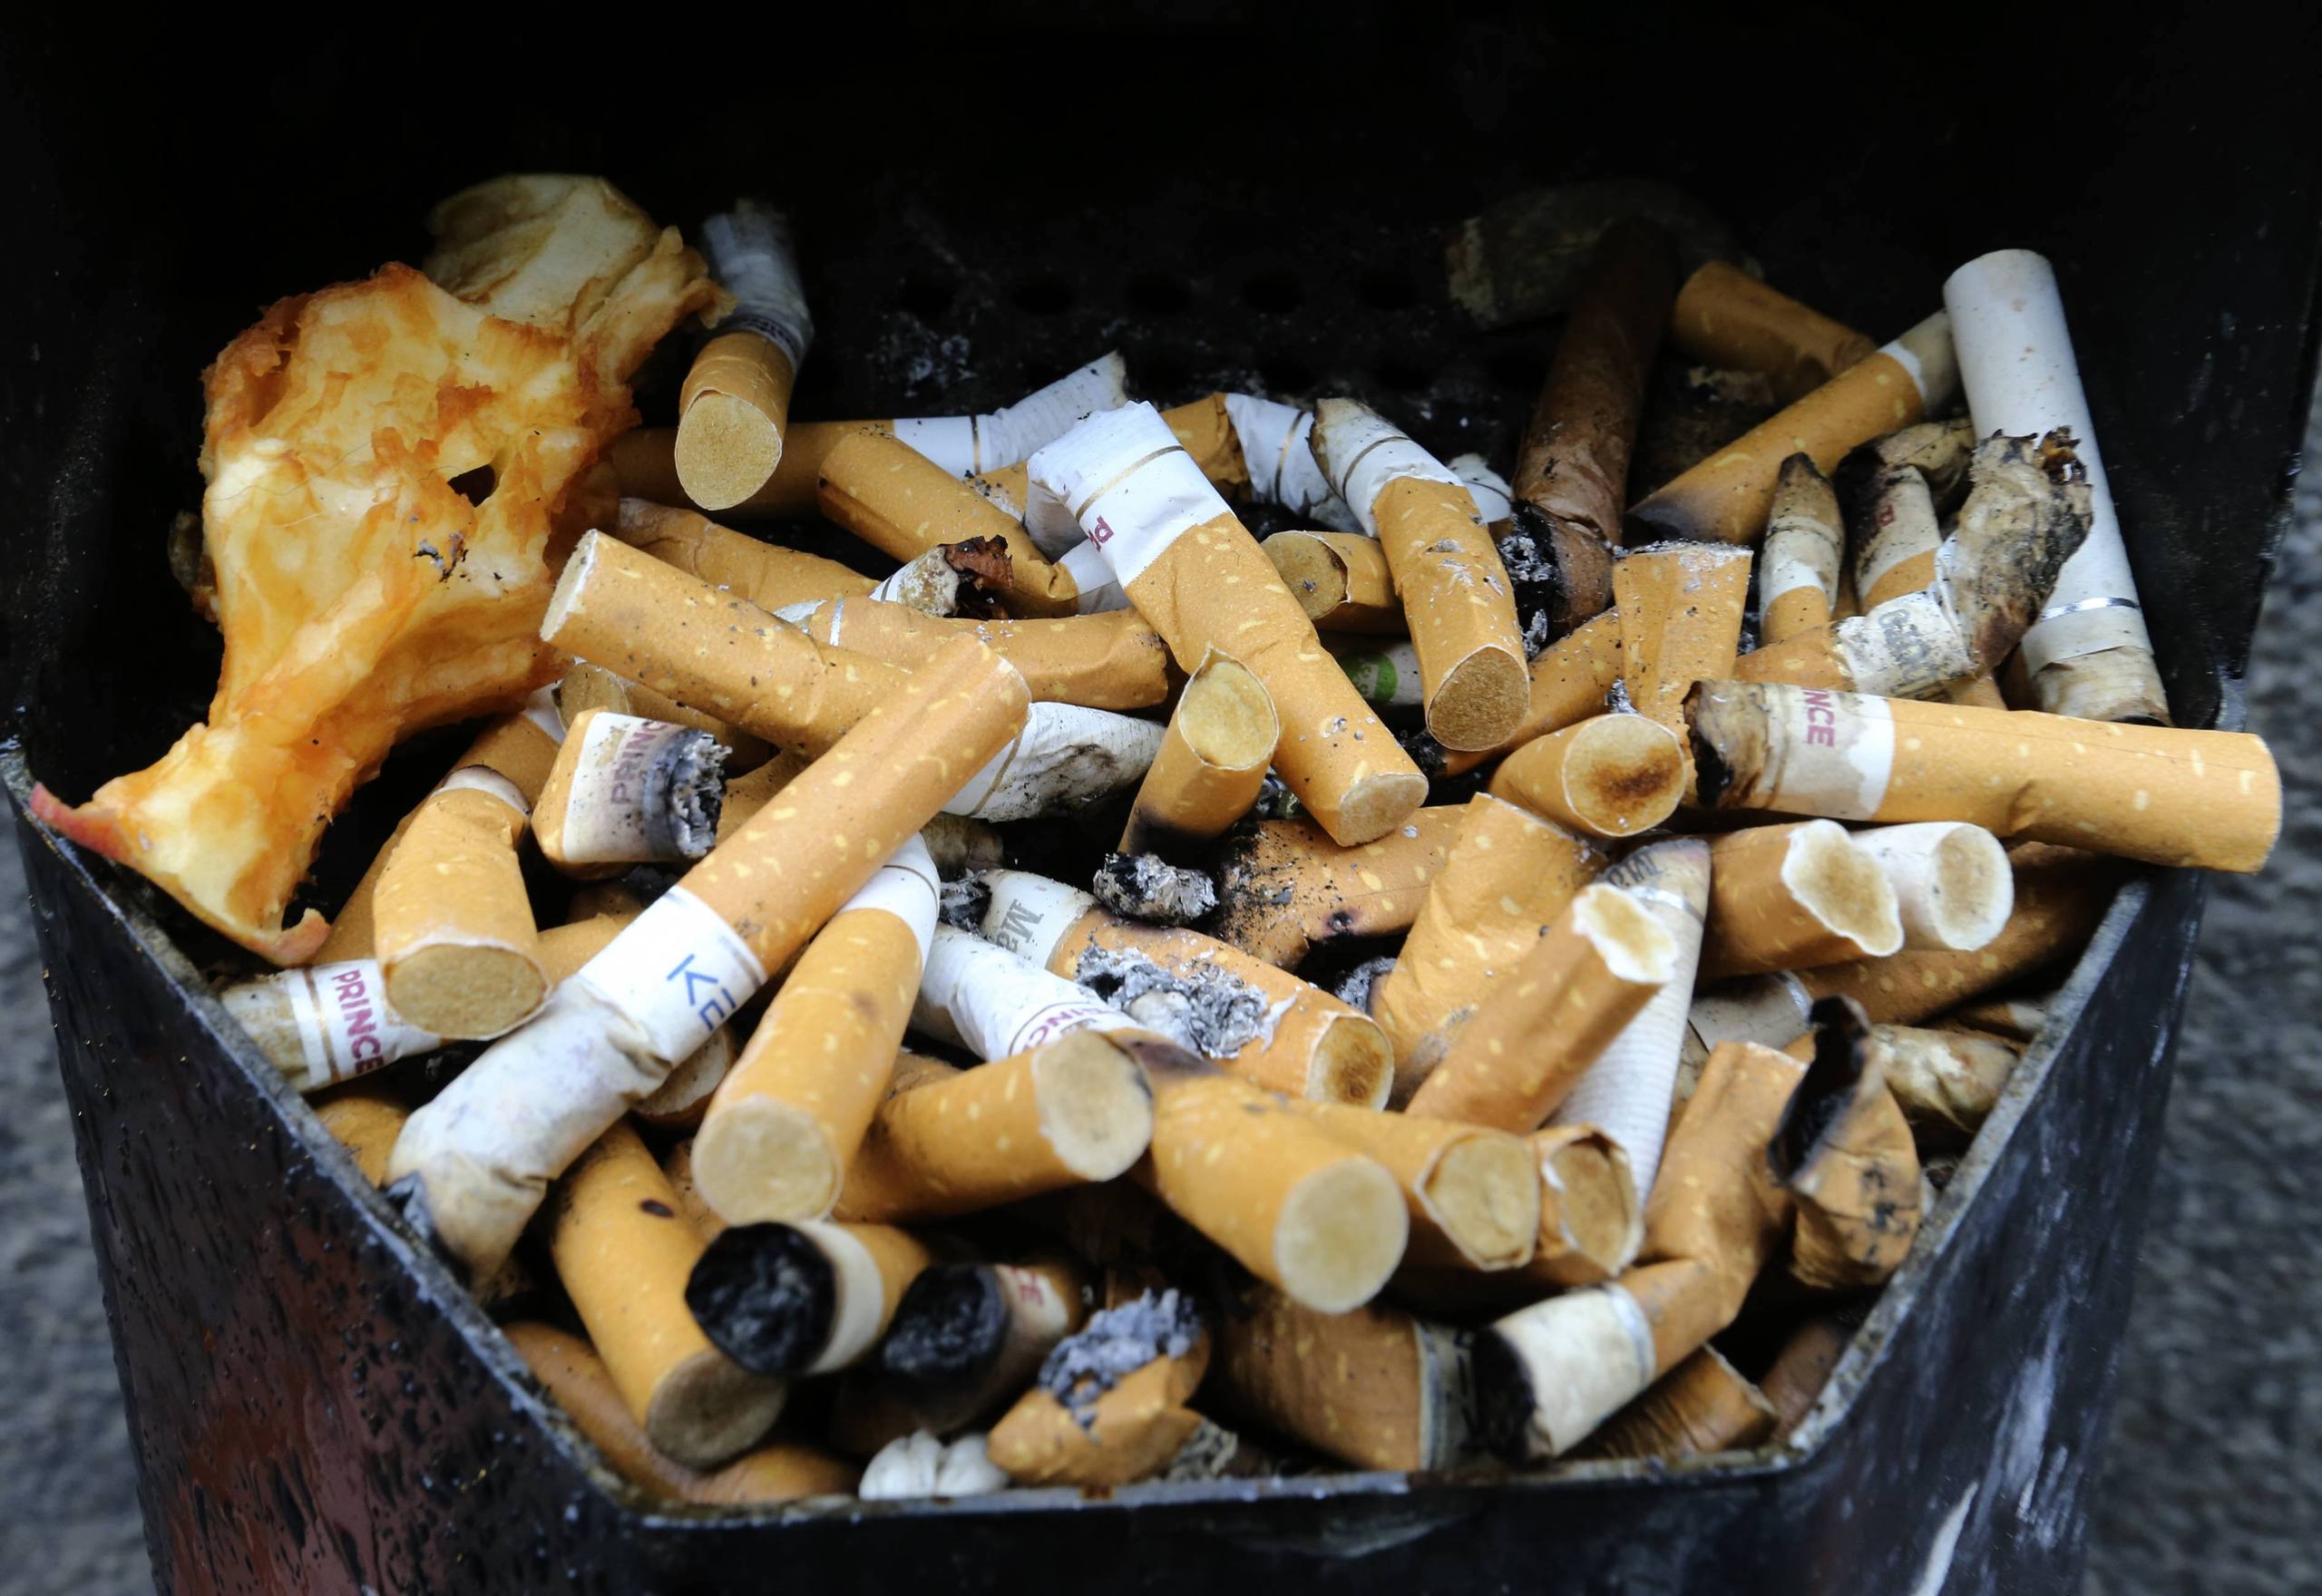 Nolltolerans Mot Tobak Stoppar Inte Rokningen